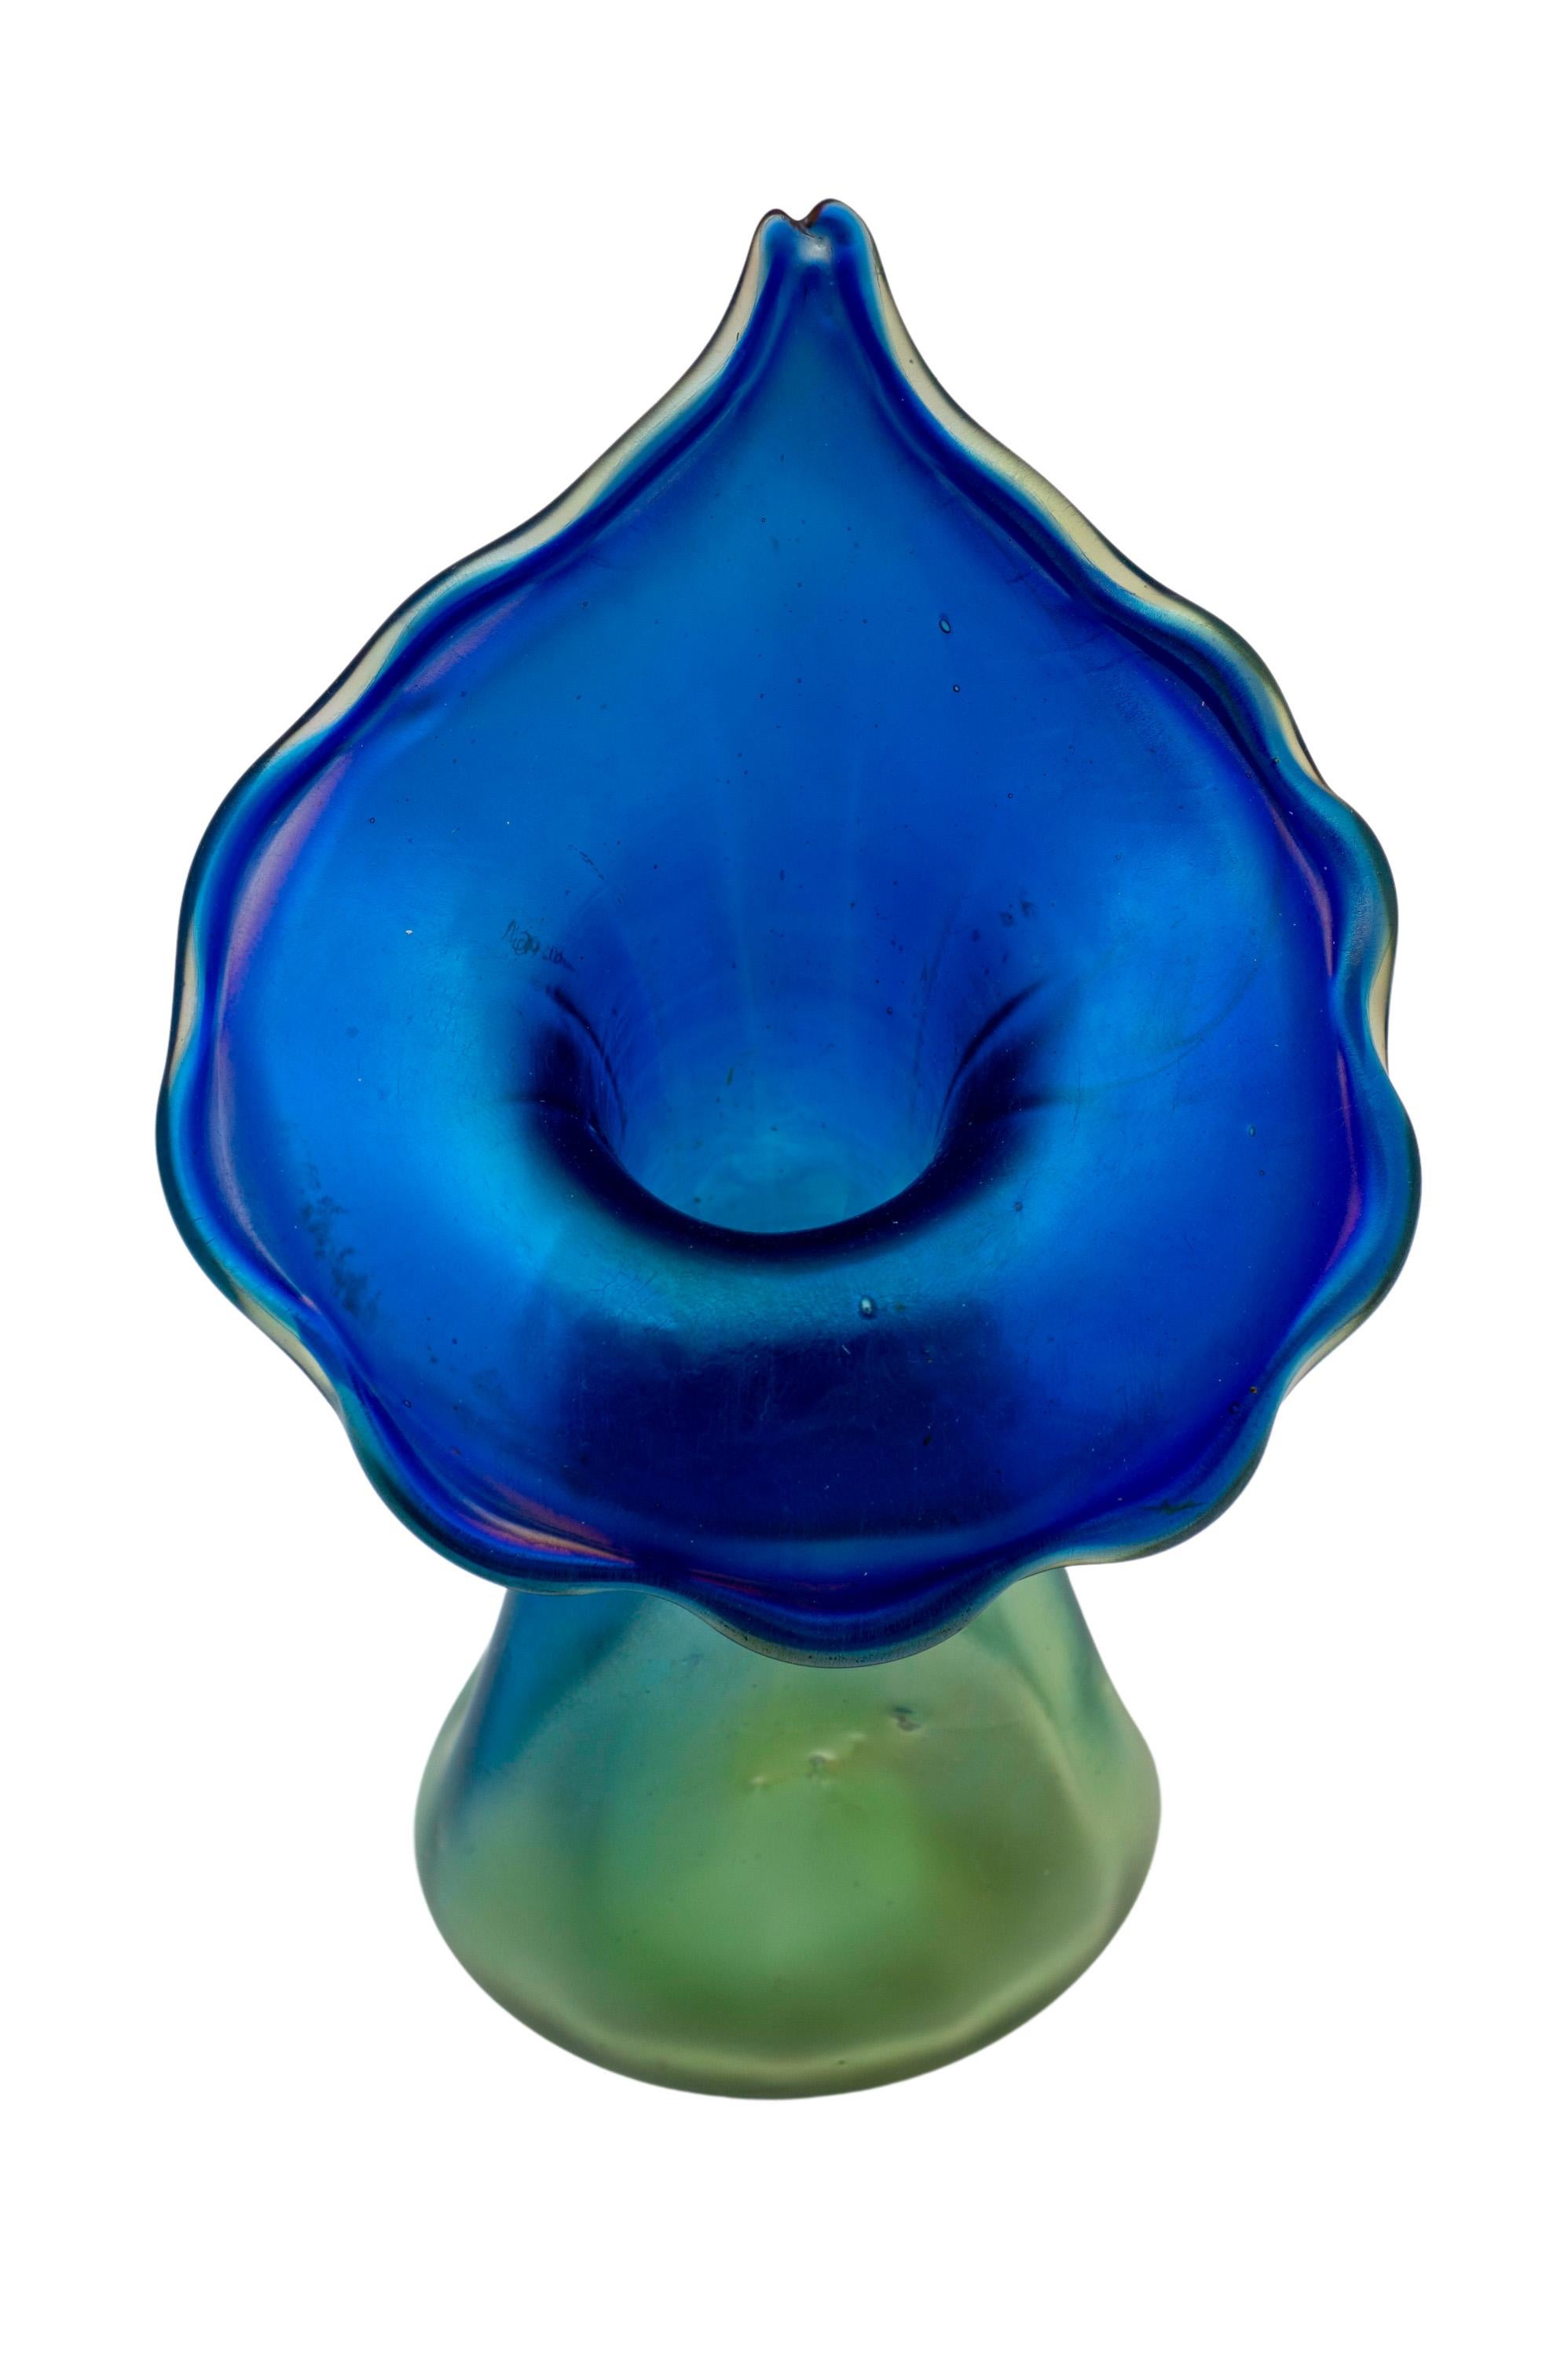 Antique Art Nouveau Glass Vase Loetz Luna Decoration 1901 Vienna Jugendstil Blue For Sale 2